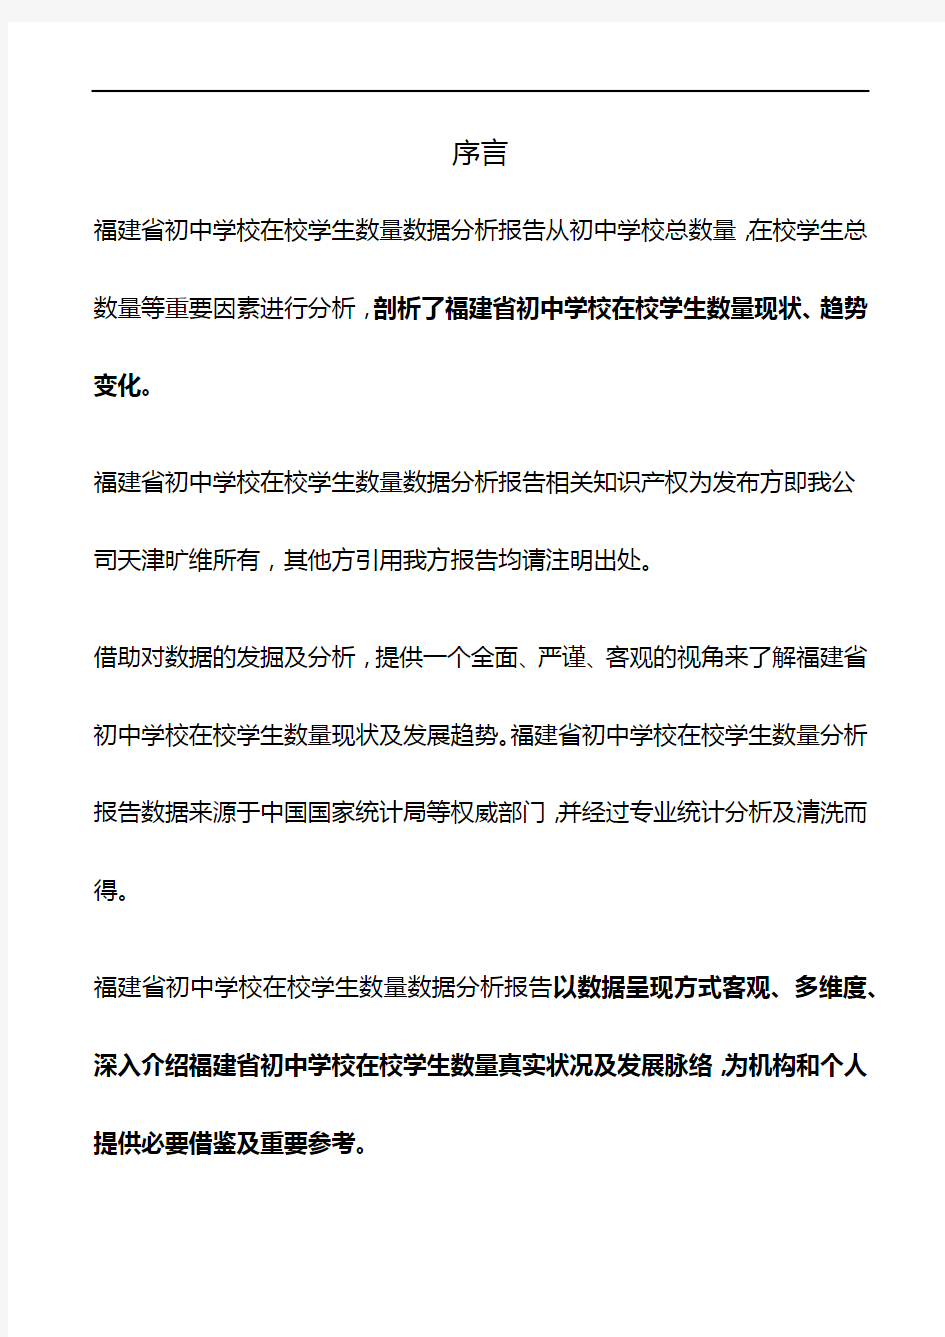 福建省初中学校在校学生数量数据分析报告2019版